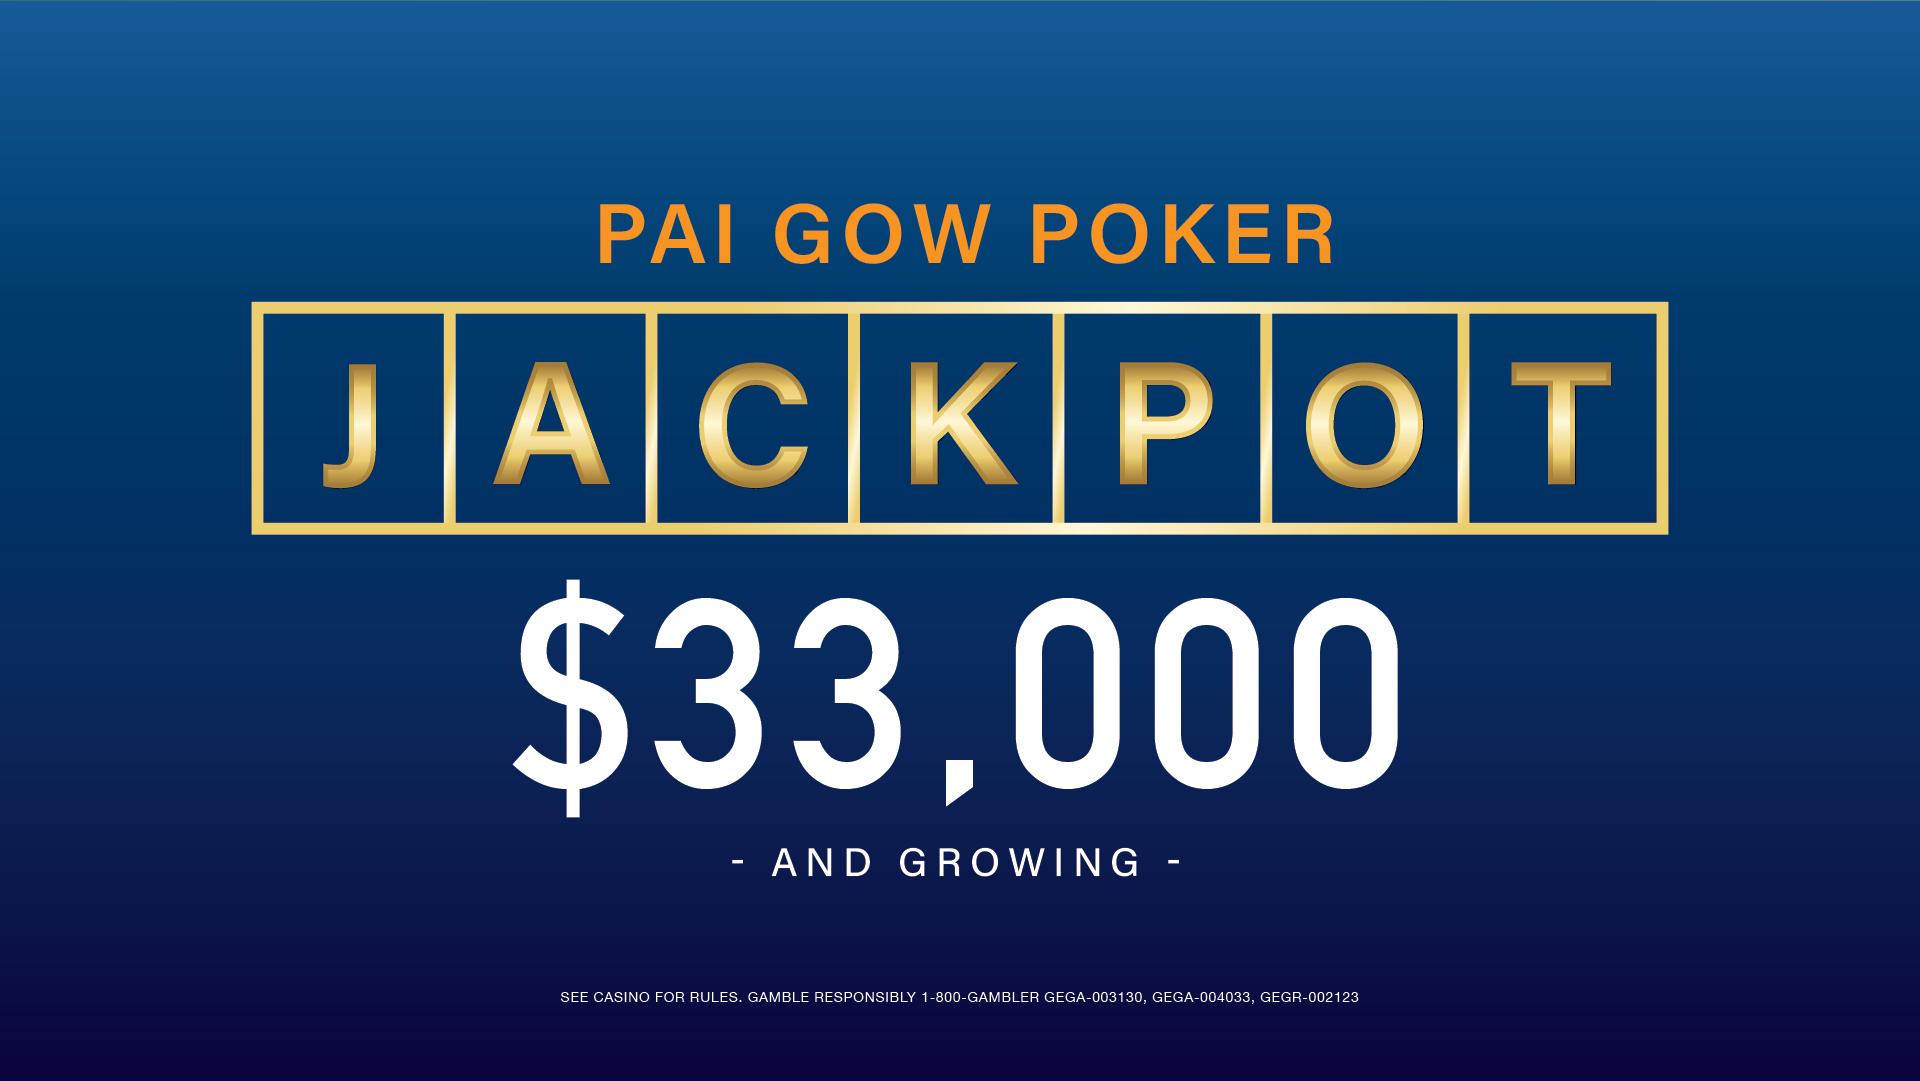 (English) Pai Gow Poker Jackpot